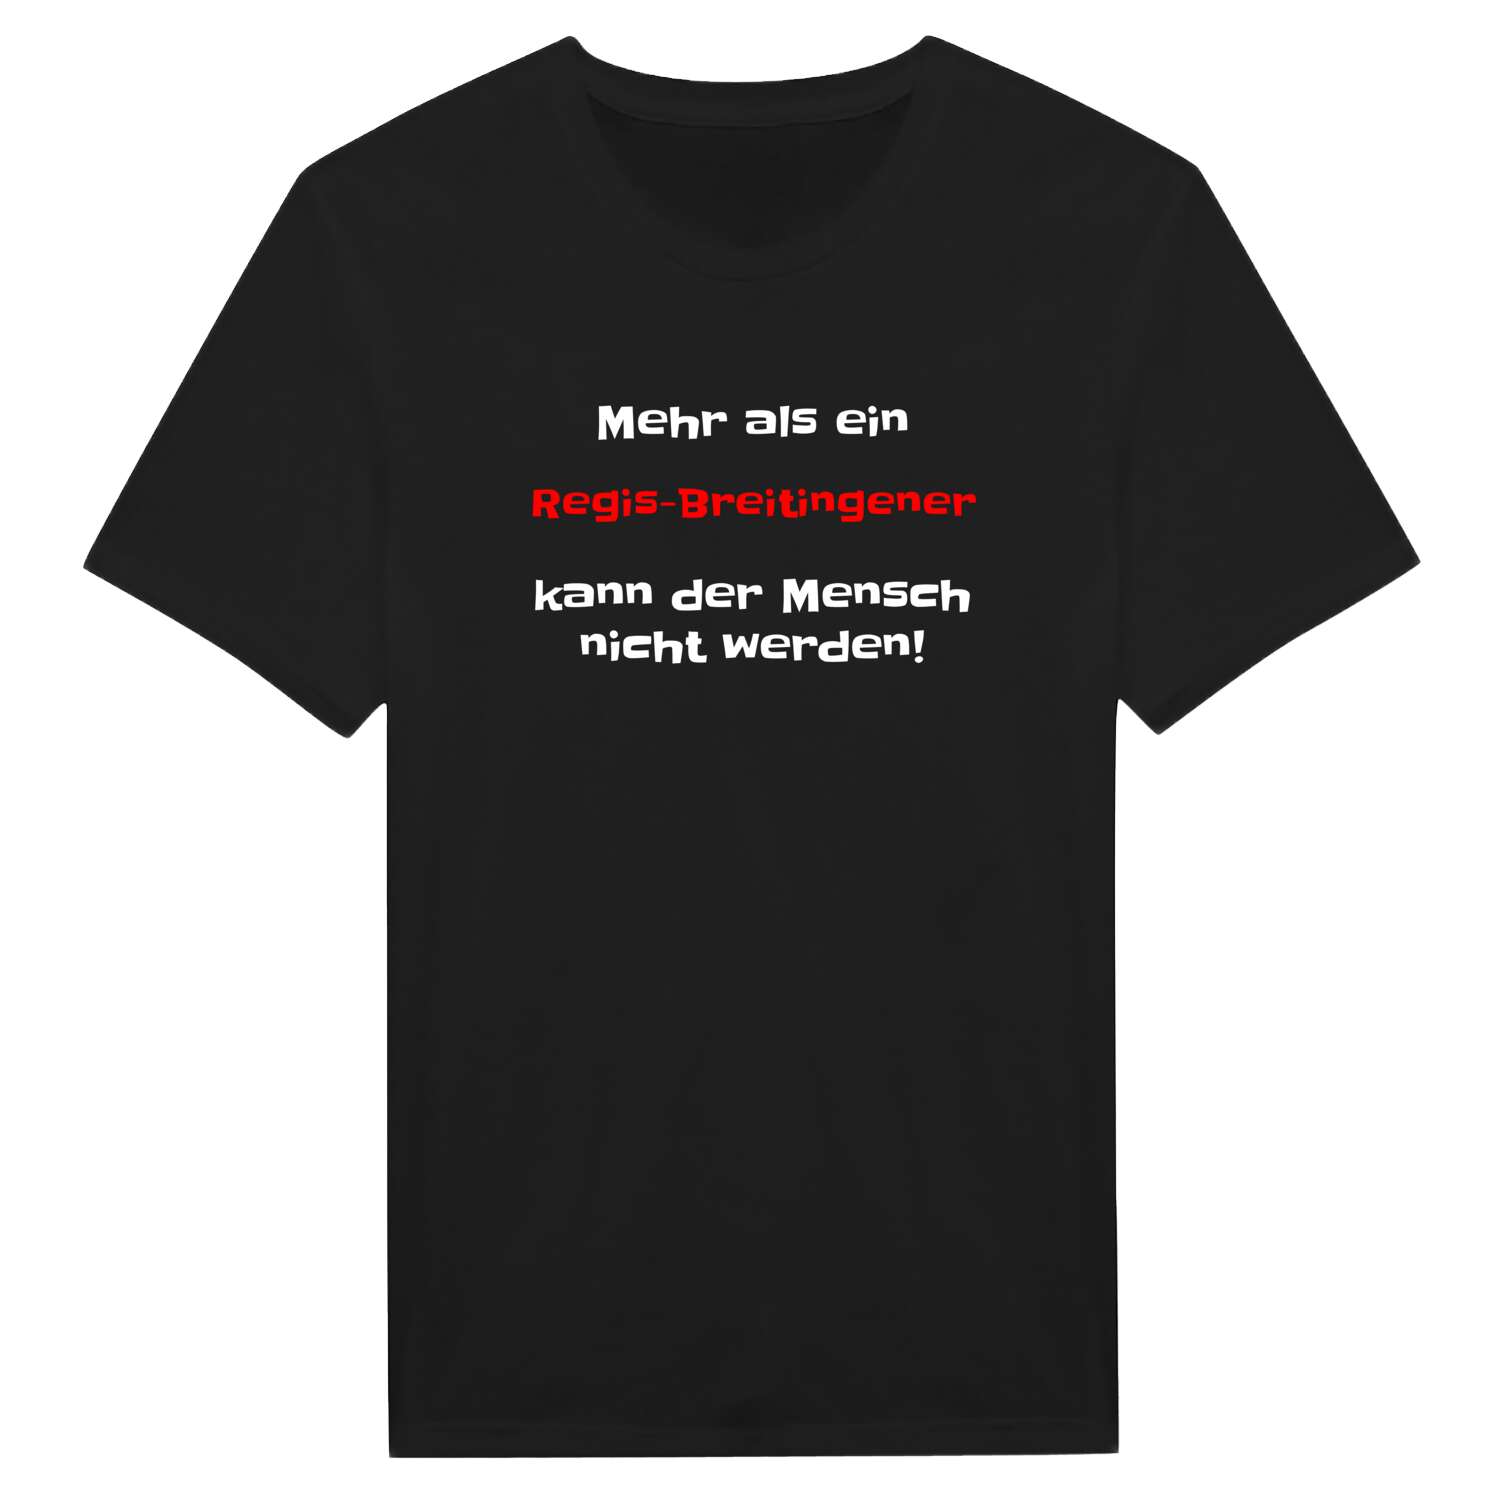 Regis-Breitingen T-Shirt »Mehr als ein«